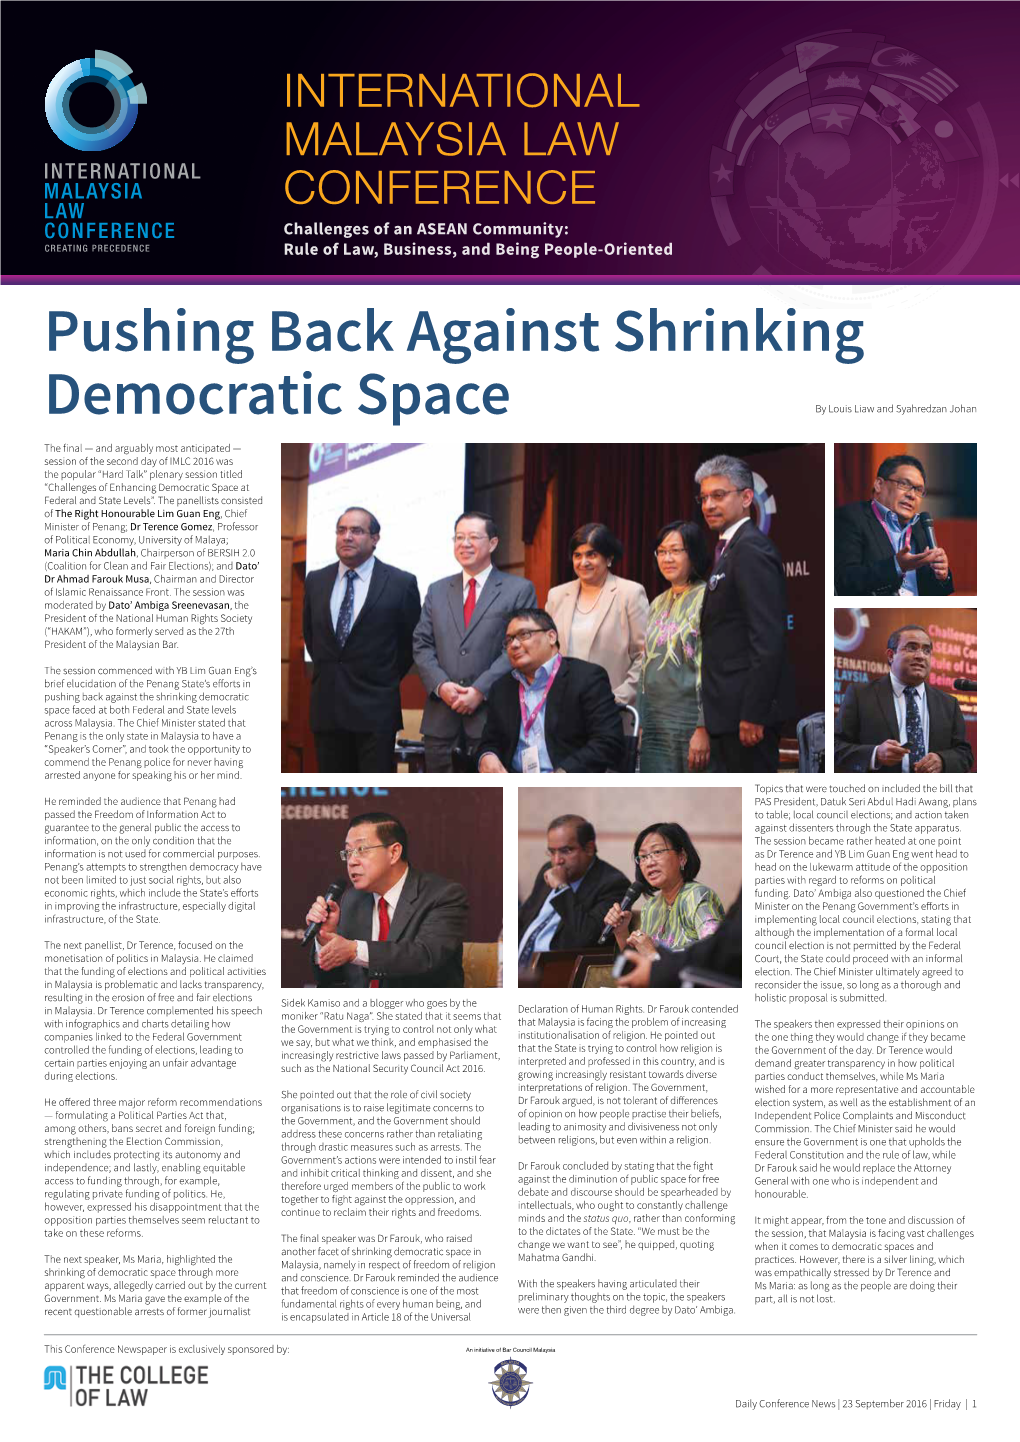 Pushing Back Against Shrinking Democratic Space